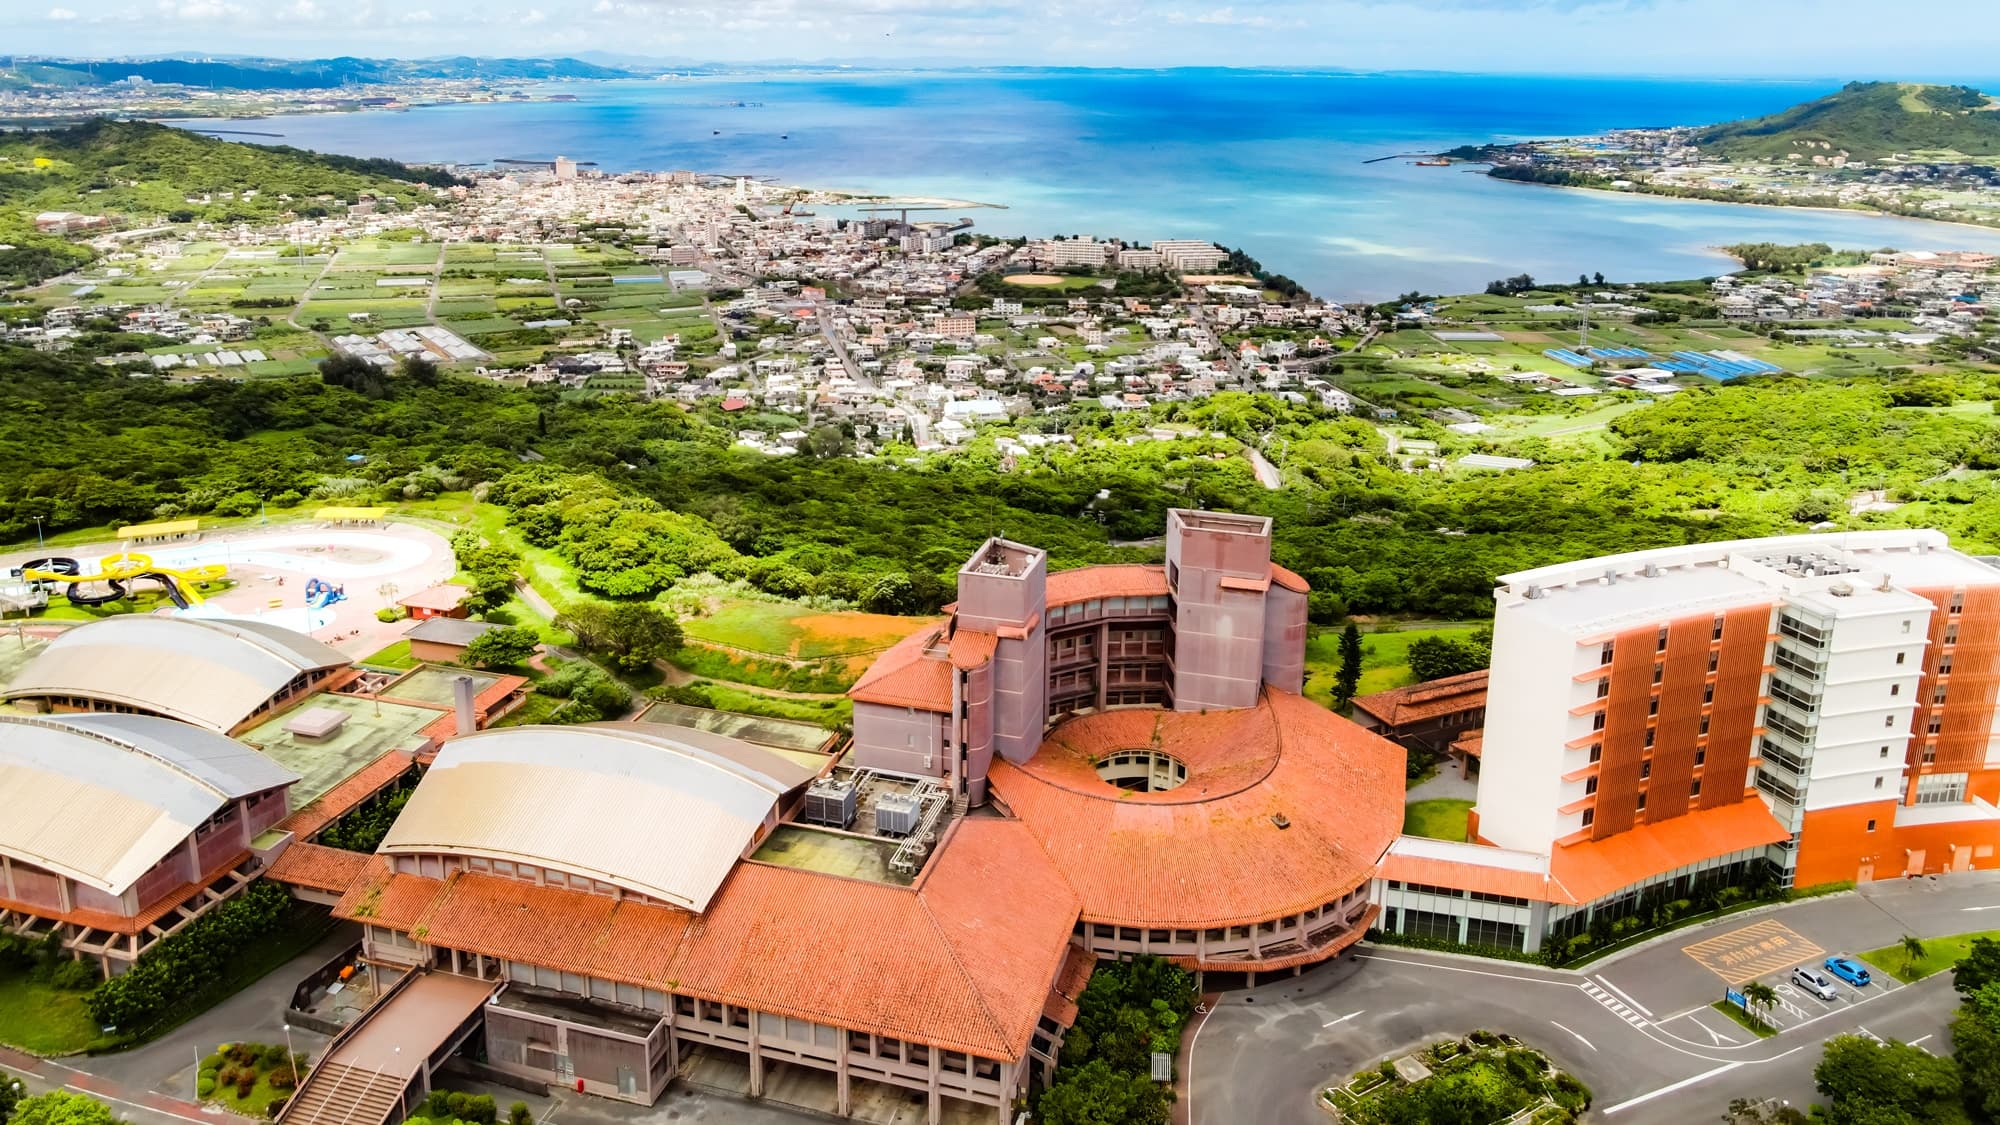 沖縄で温泉旅行を楽しみたい。おすすめの温泉宿おしえてください